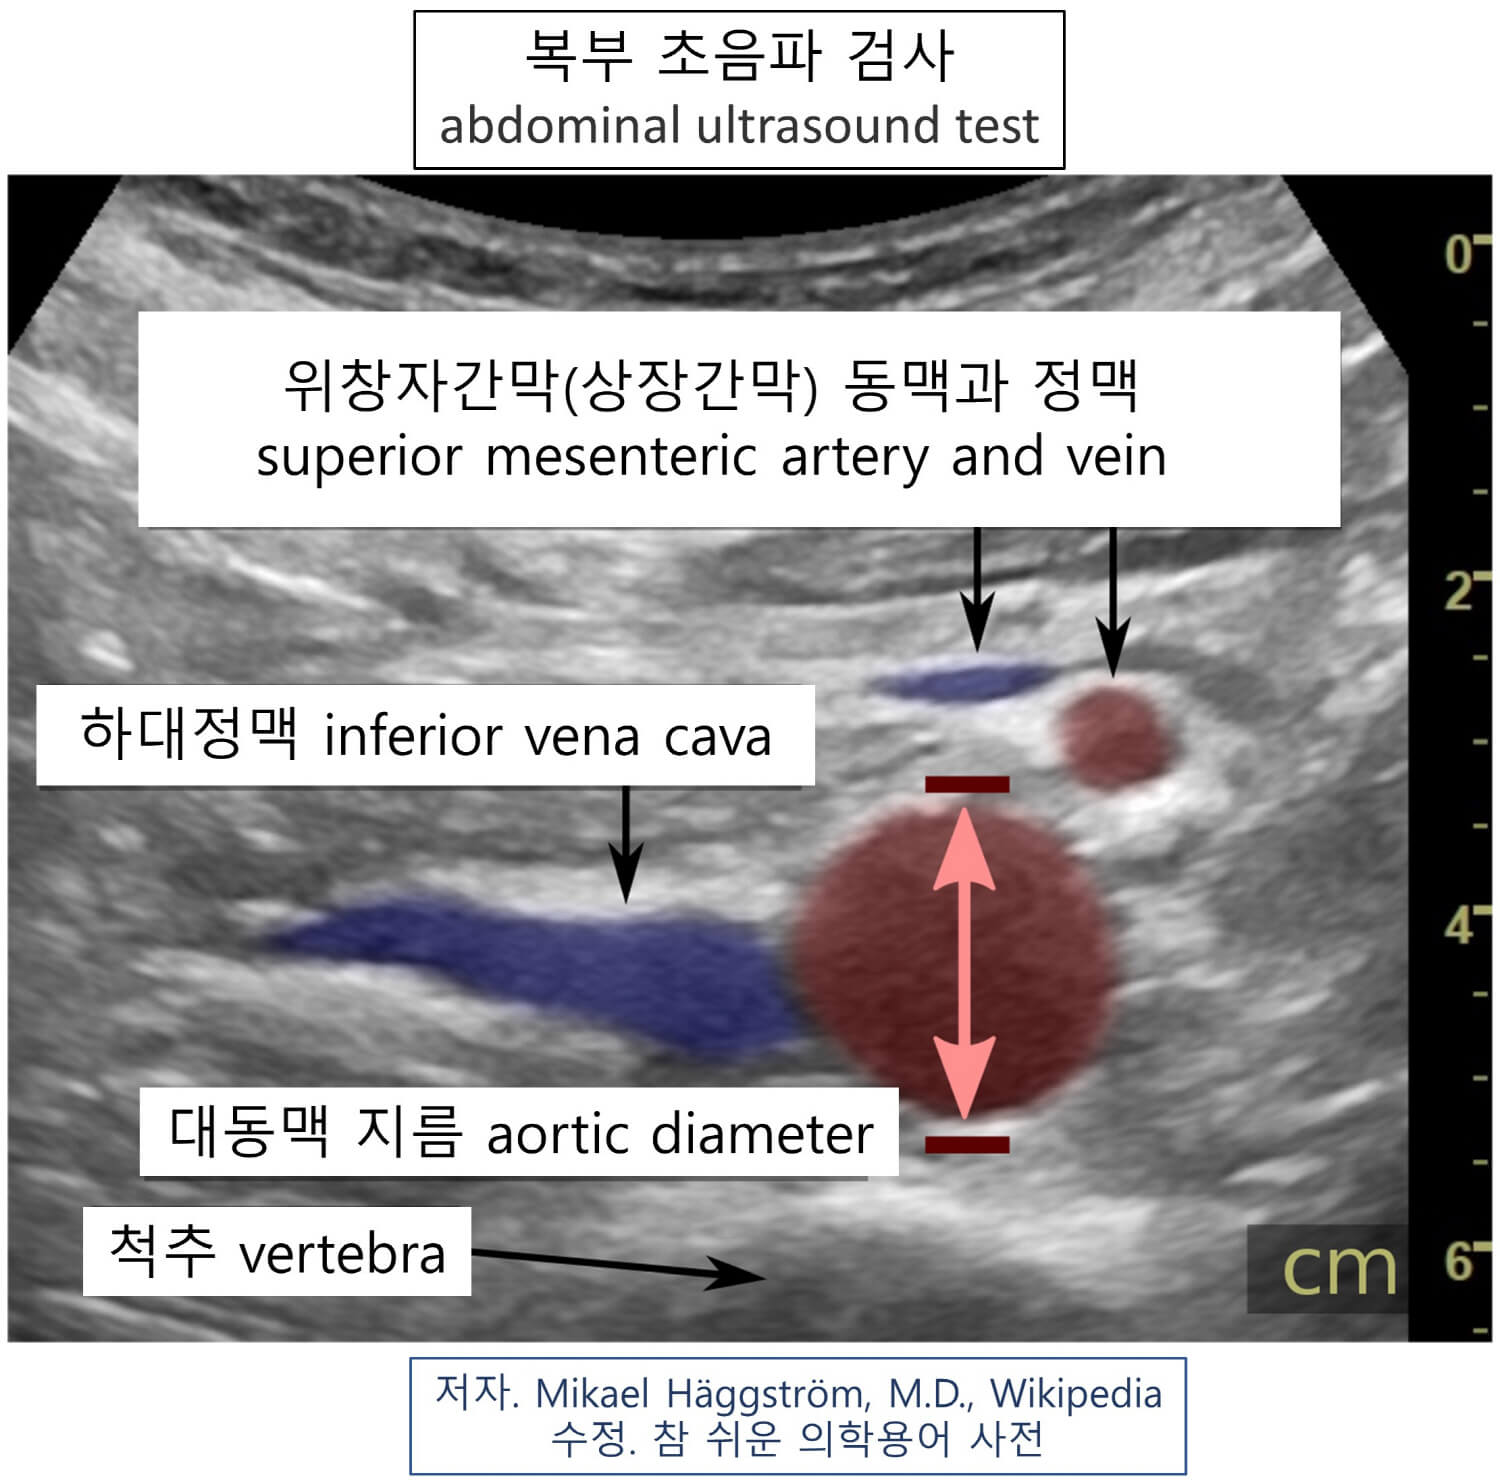 의학용어 abdominal ultrasound test 뜻 복부 초음파 검사